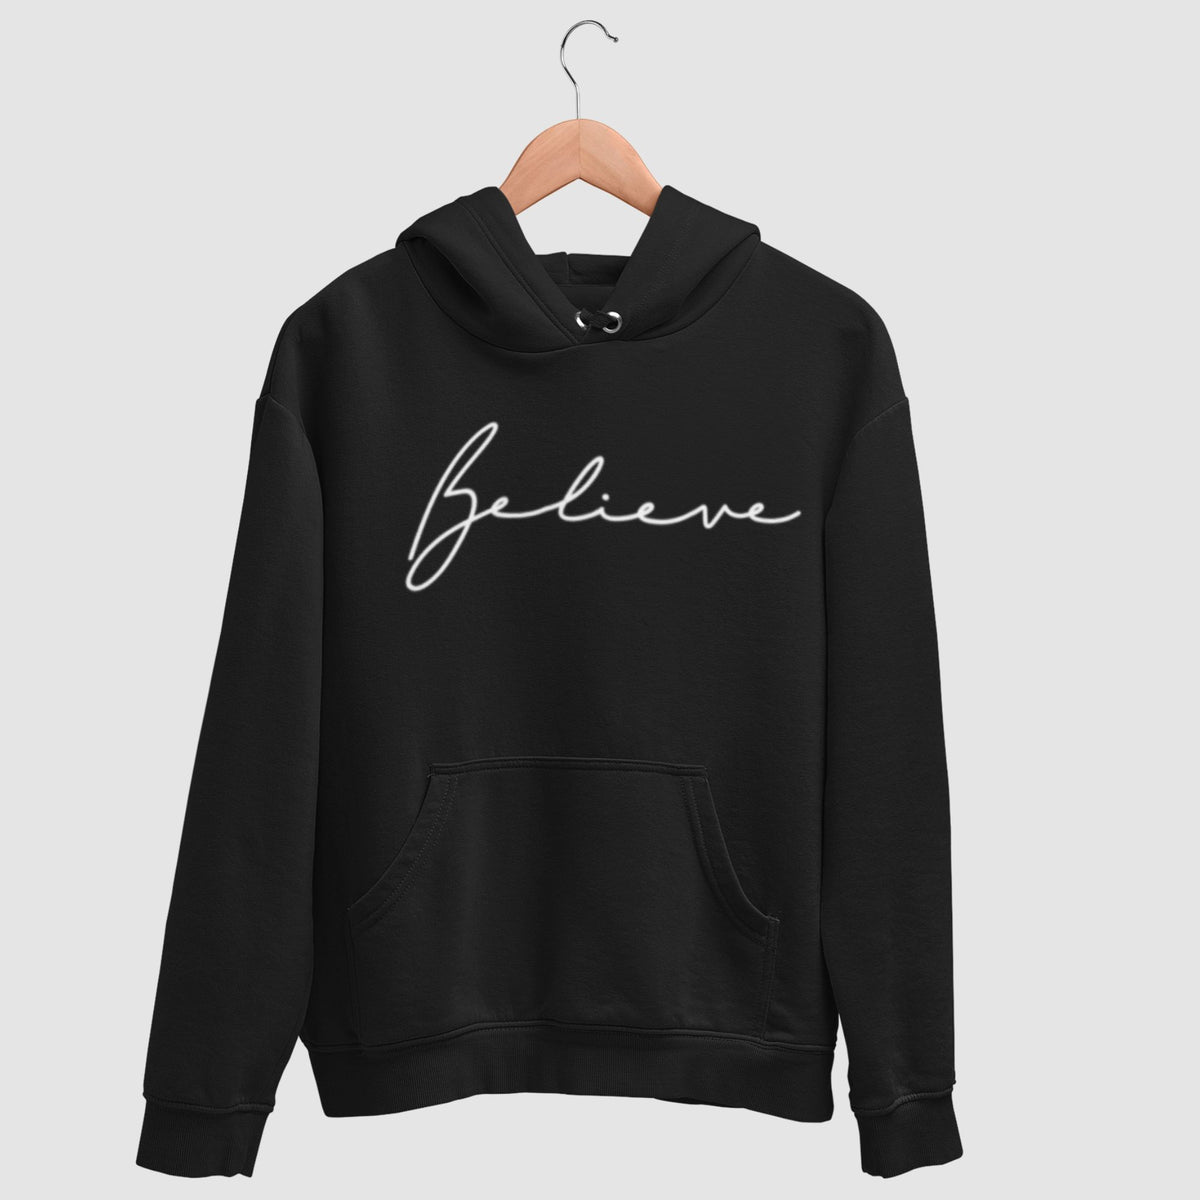 belive-black-printed-unisex-hanging-hoodie-gogirgit-com